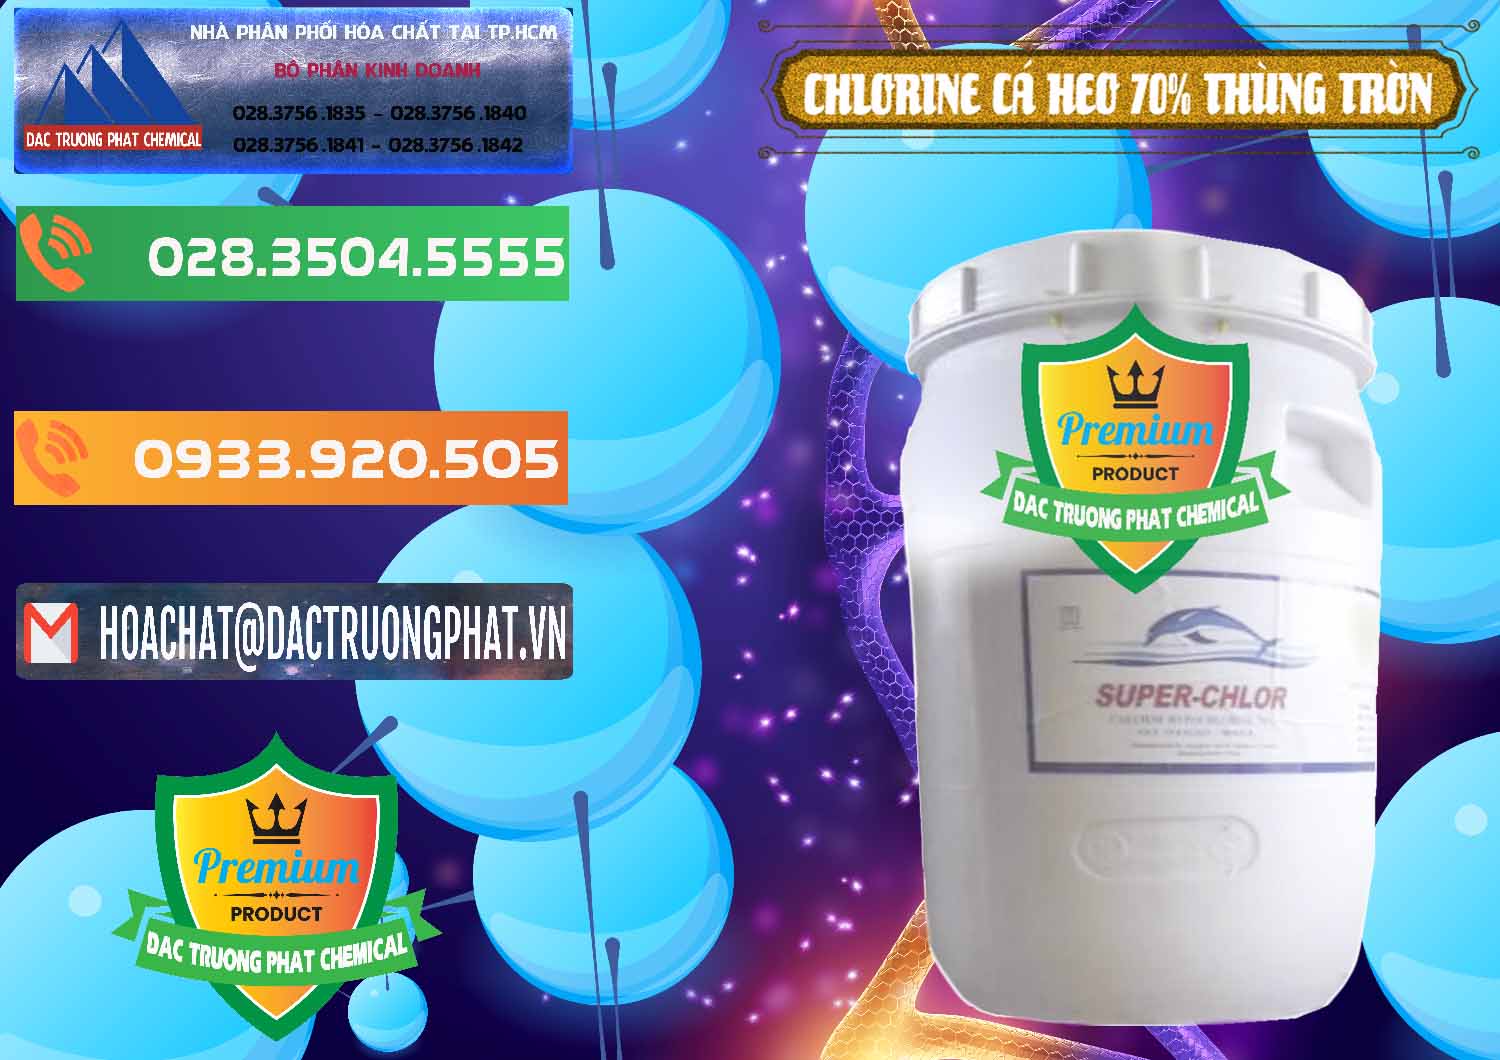 Nhà nhập khẩu & bán Clorin - Chlorine Cá Heo 70% Super Chlor Thùng Tròn Nắp Trắng Trung Quốc China - 0239 - Đơn vị chuyên bán - phân phối hóa chất tại TP.HCM - hoachatxulynuoc.com.vn